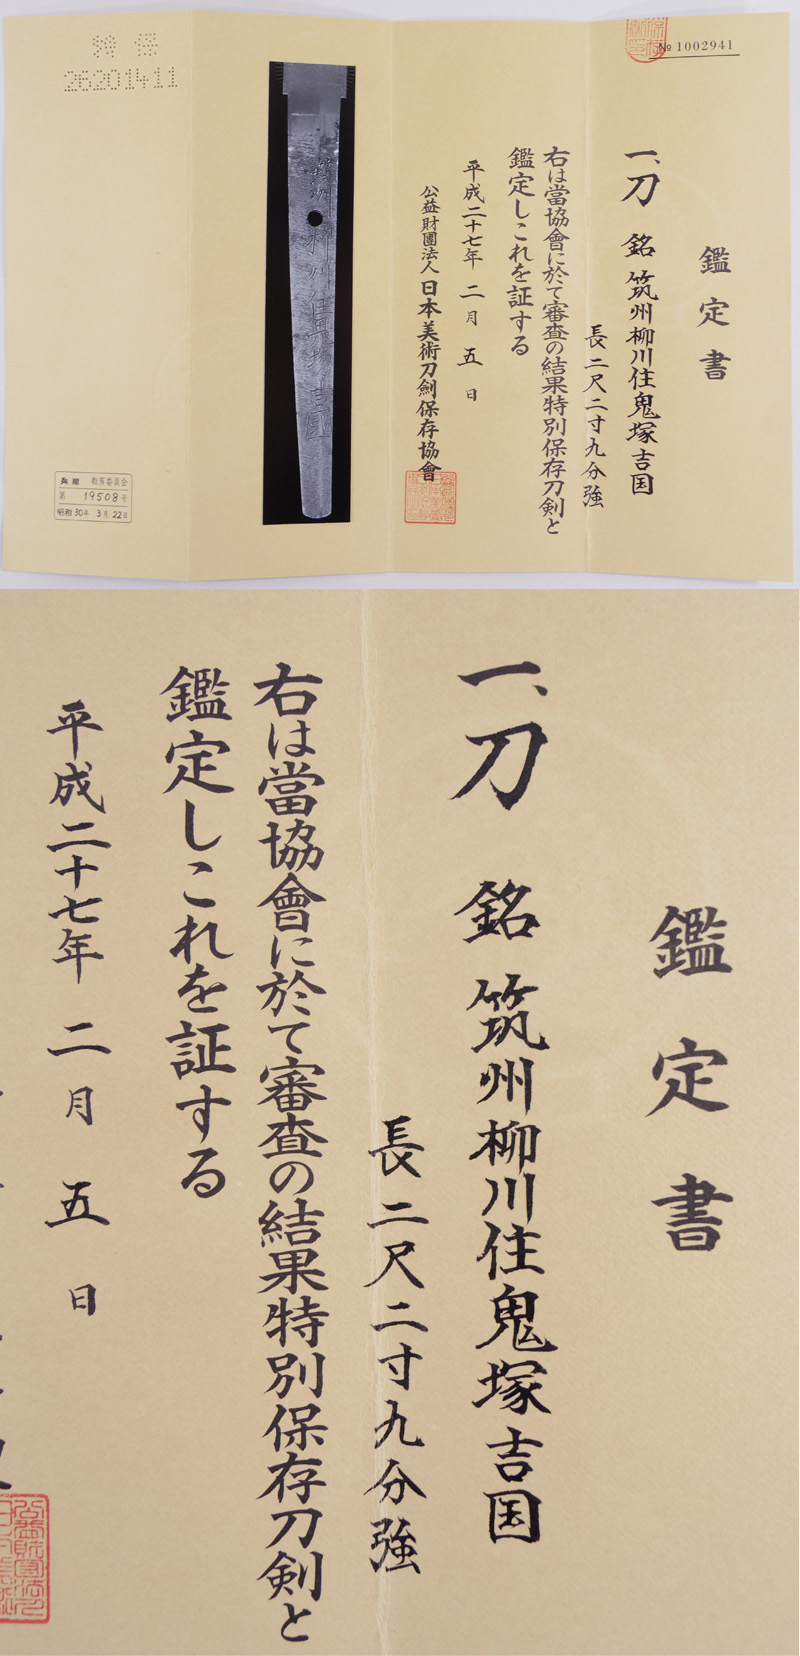 刀　筑州柳川住鬼塚吉国 (新刀上作) (業物) Picture of Certificate